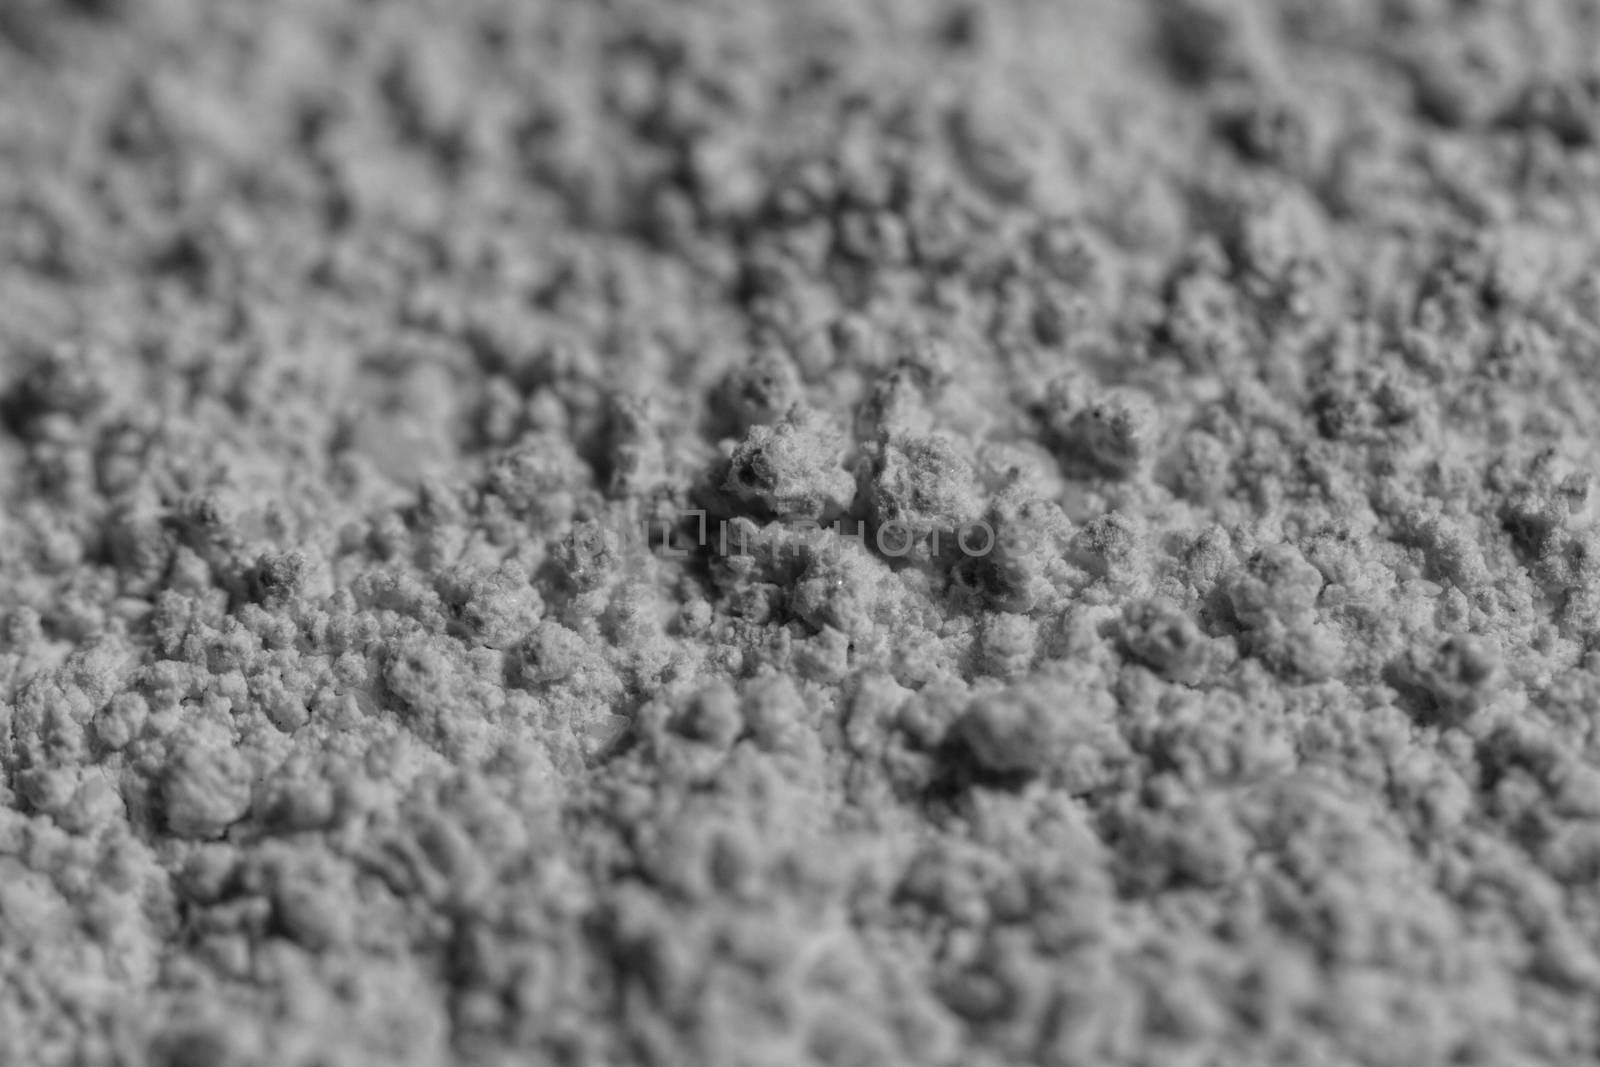 Calcium powder by Nneirda